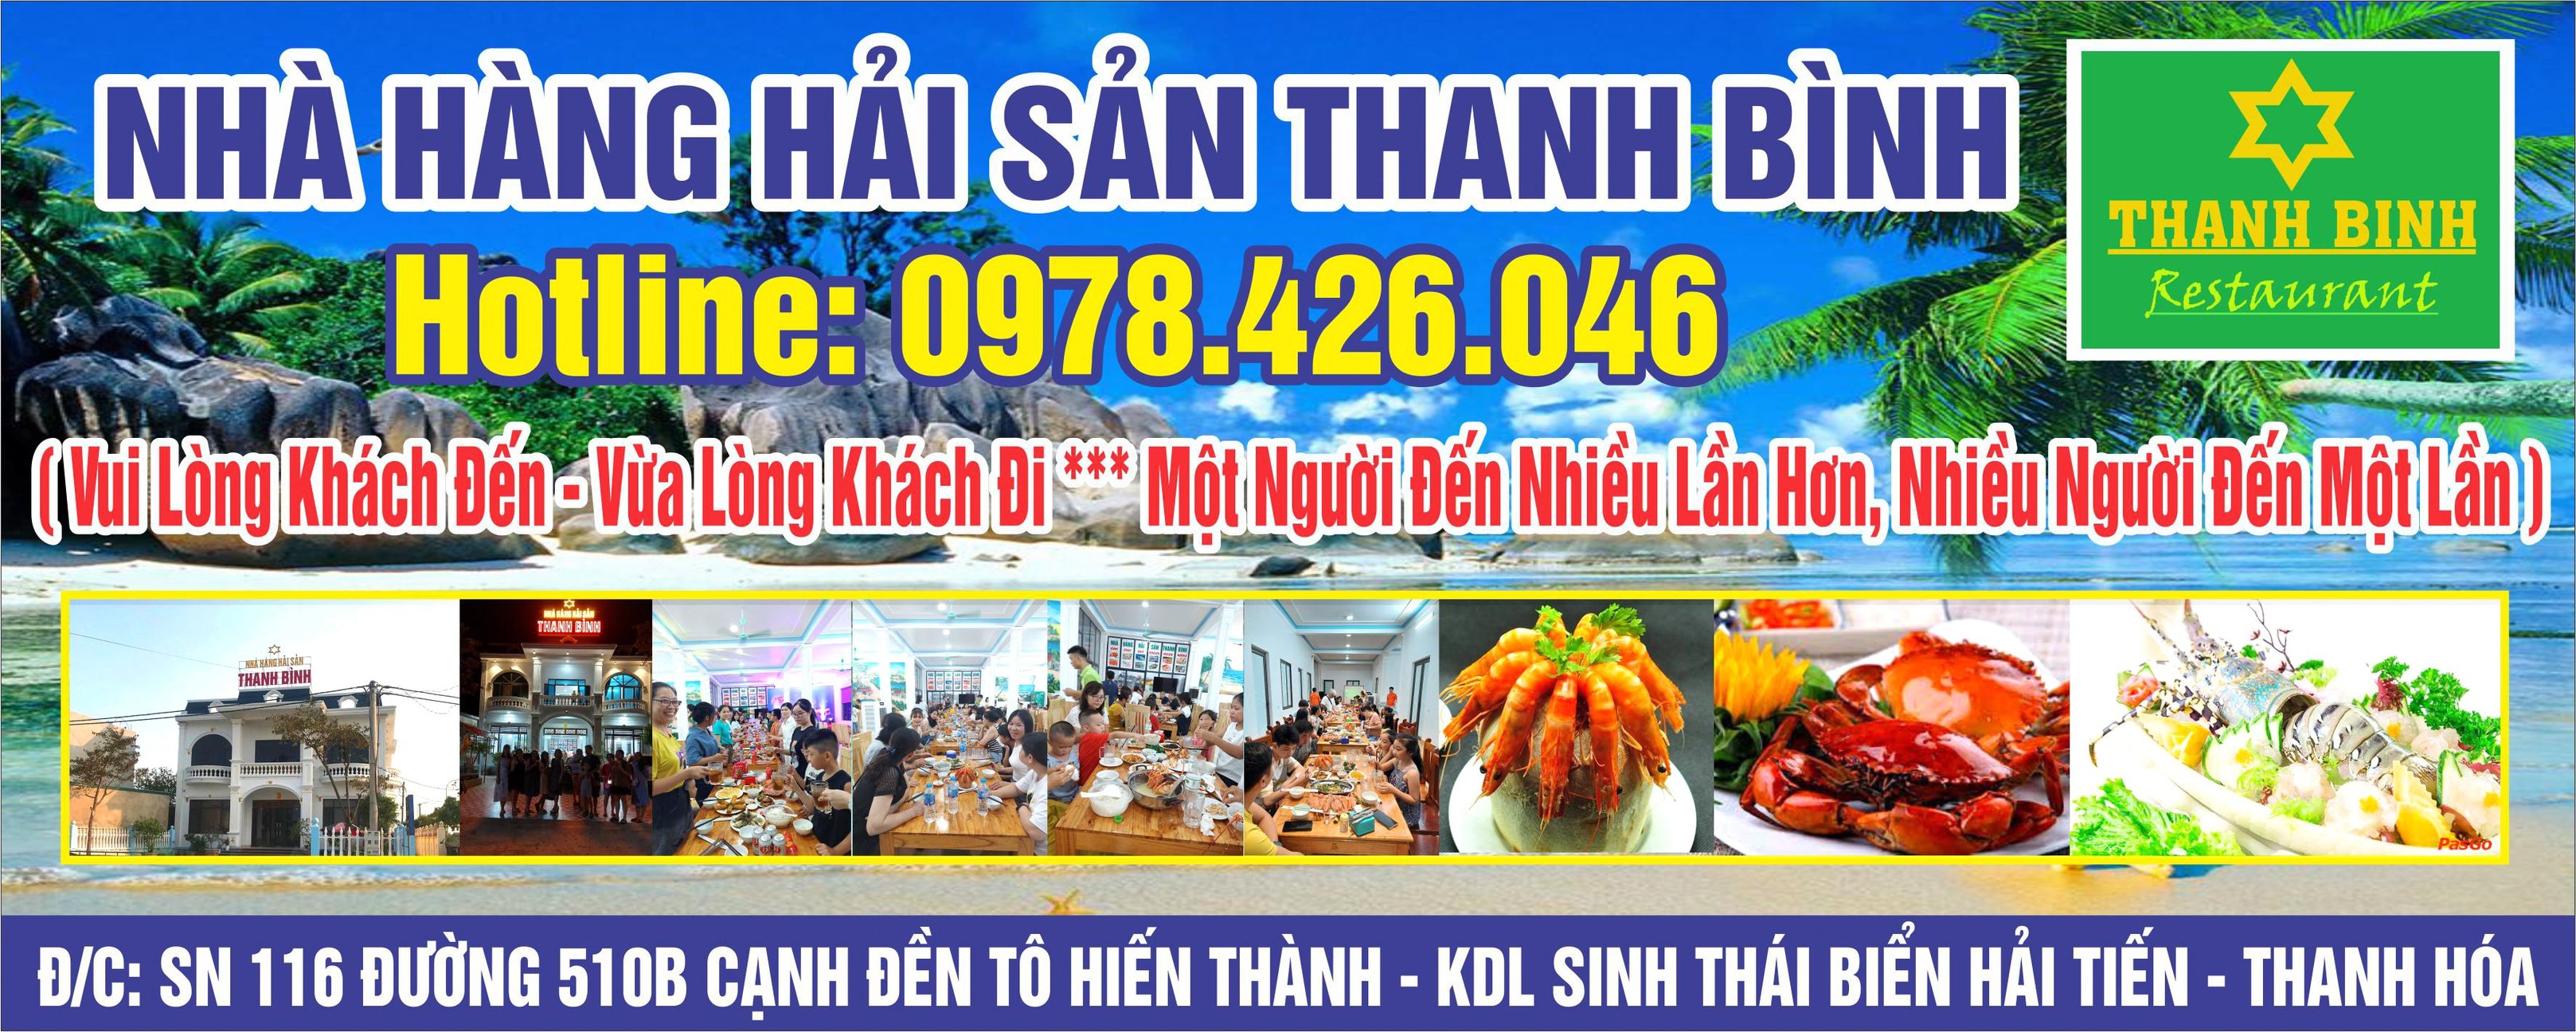 Nhà hàng Hải Tiến Thanh Bình là lựa chọn tối ưu cho quý khách